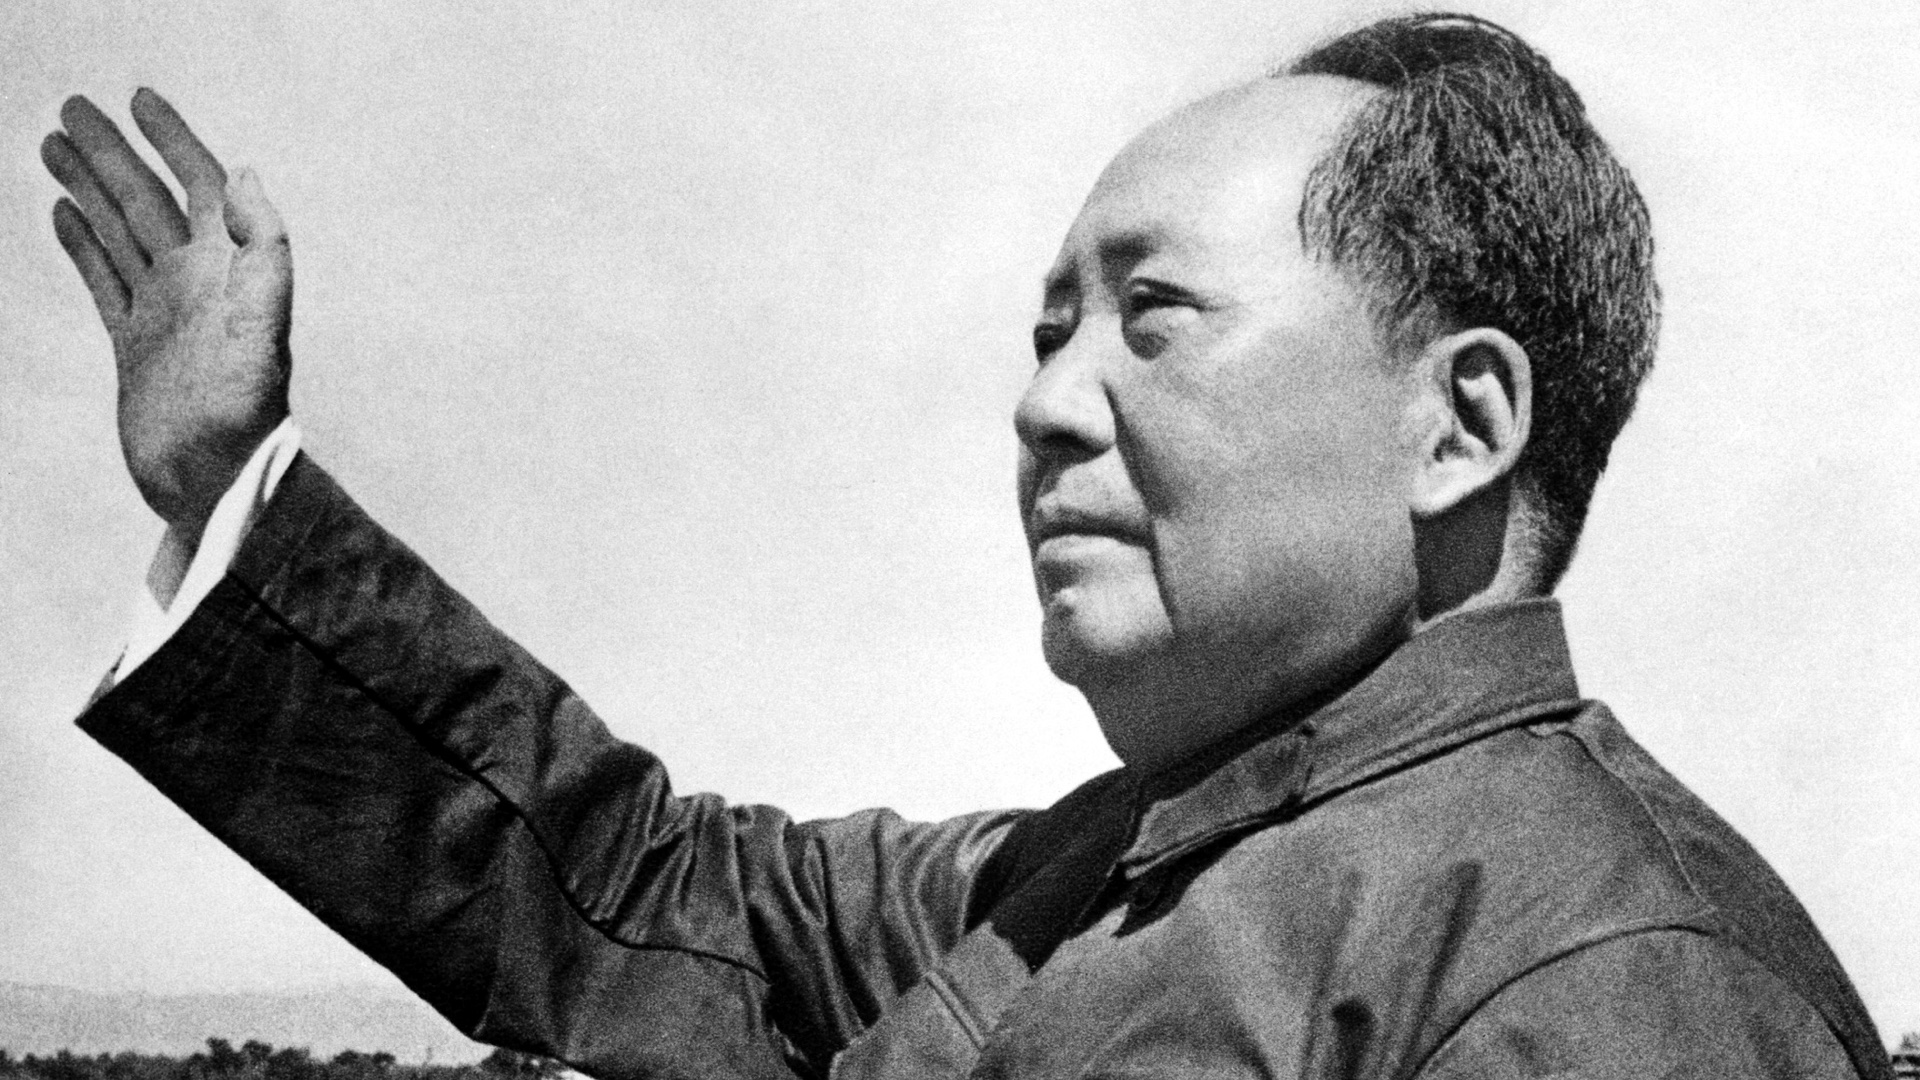 Доклад: О перспективах революции в Китае (И. Сталин)